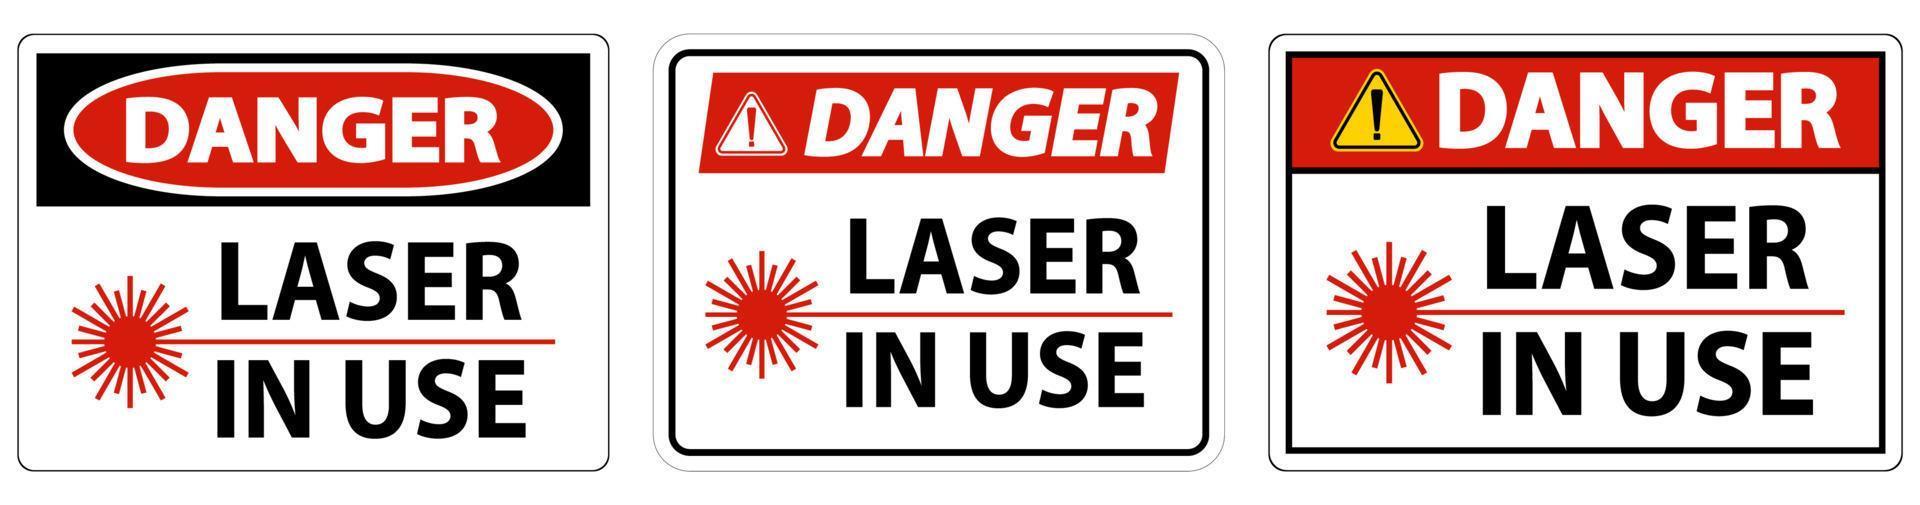 laser de perigo em sinal de símbolo de uso no fundo branco vetor